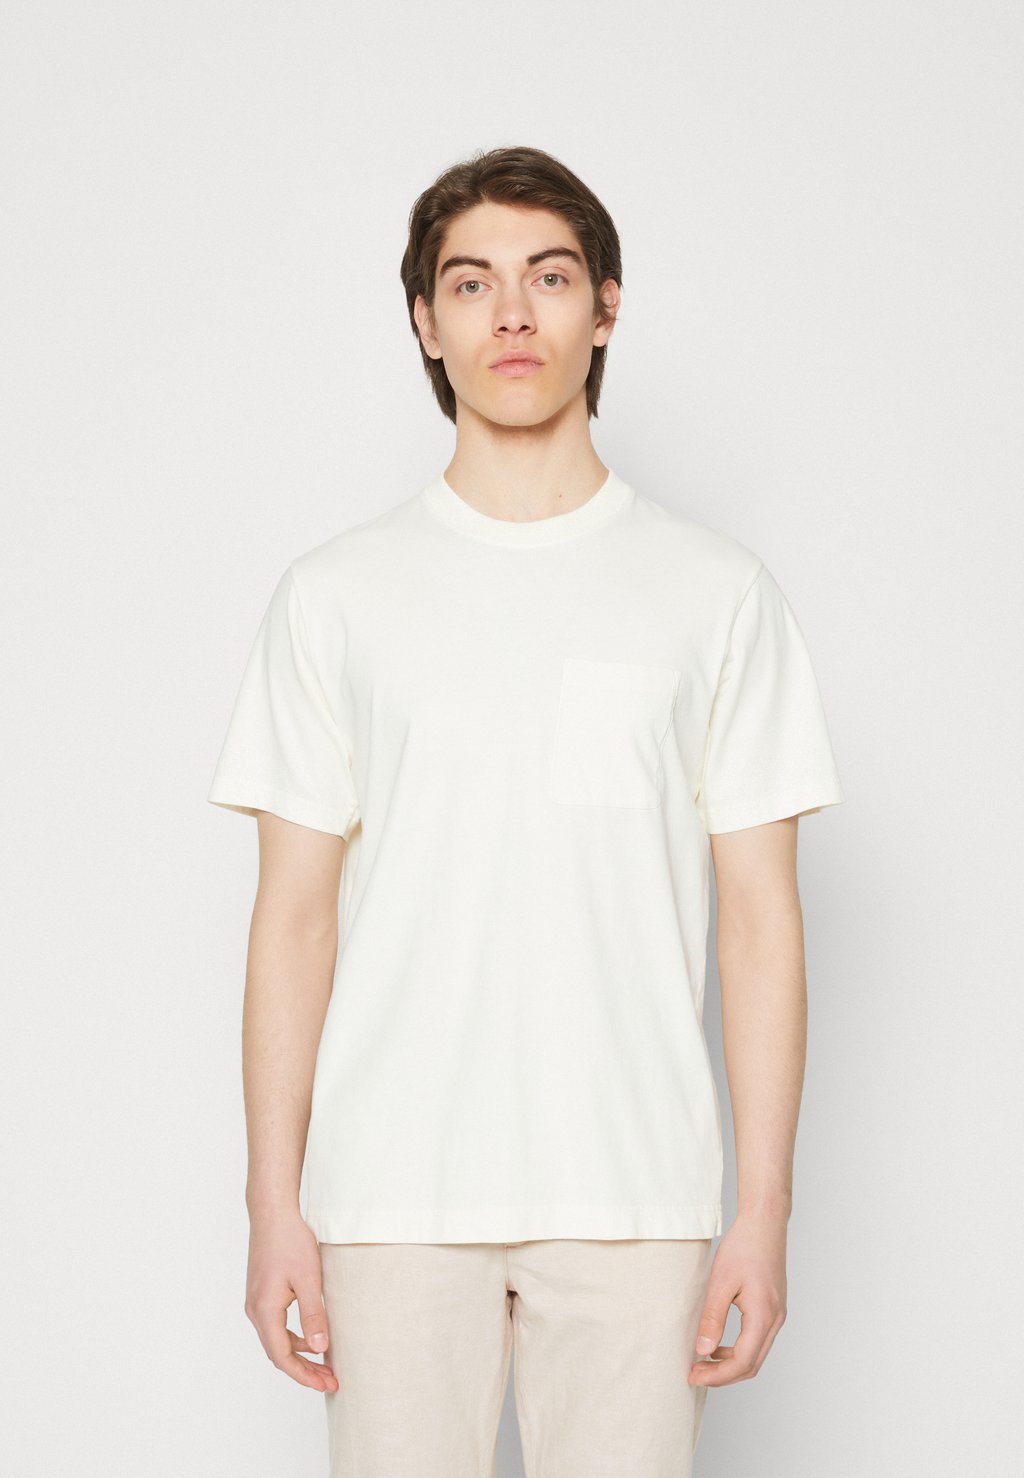 Базовая футболка Pocket Tee Mads Nørgaard, цвет off white базовая футболка nos skull tee scalpers цвет off white